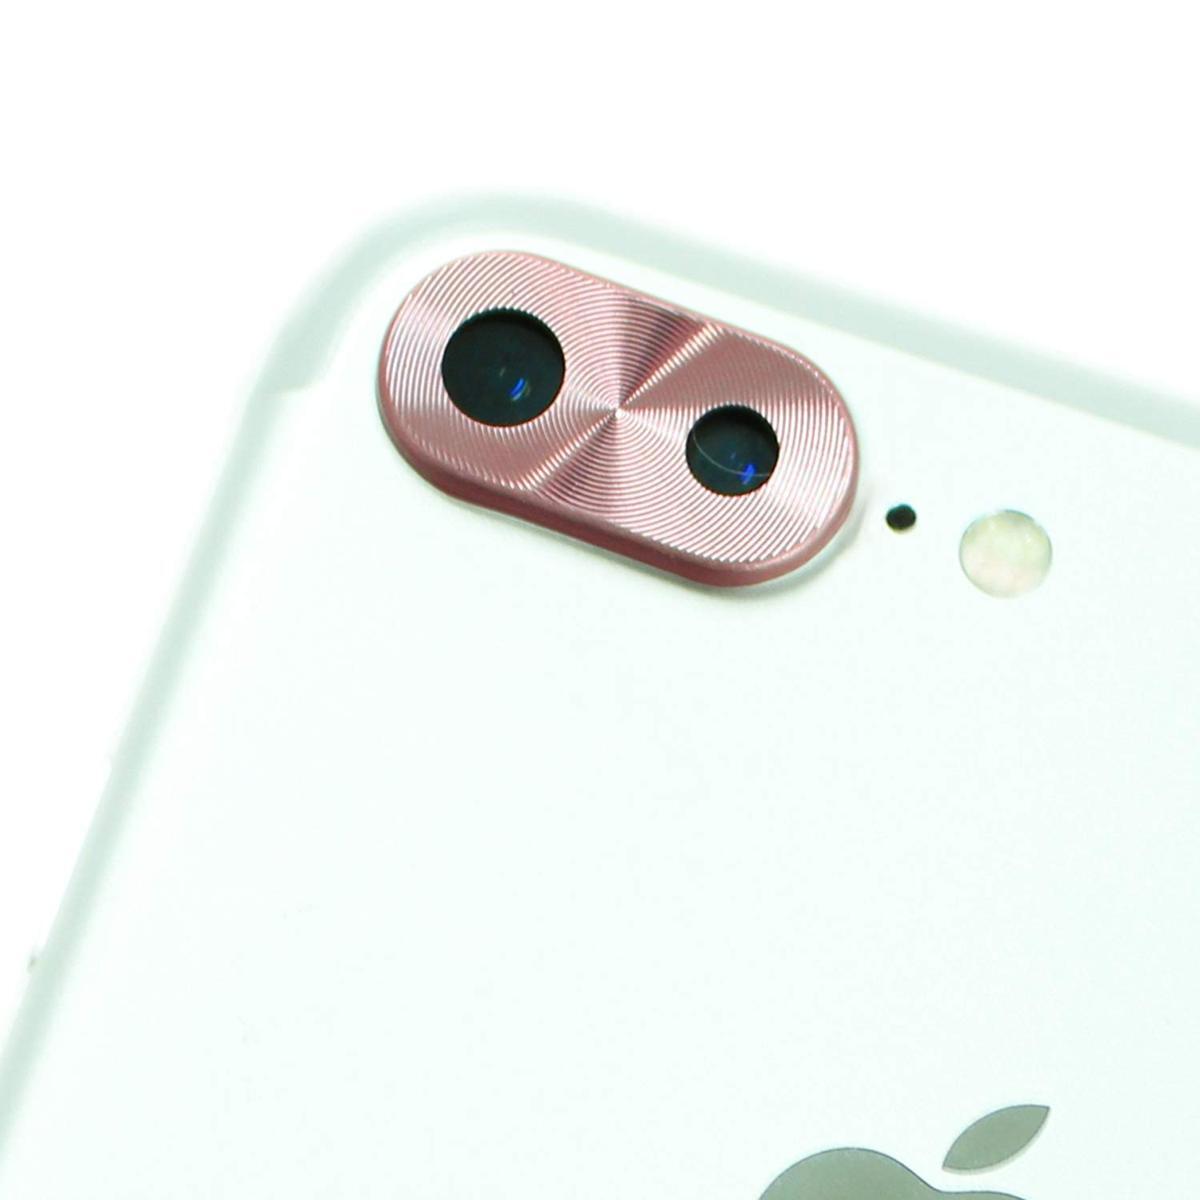 即決・送料込) iPhone 8 Plus/iPhone 7 Plus 対応 背面カメラレンズ保護カバー ローズゴールド アルミ素材 レンズガード プロテクター_画像1